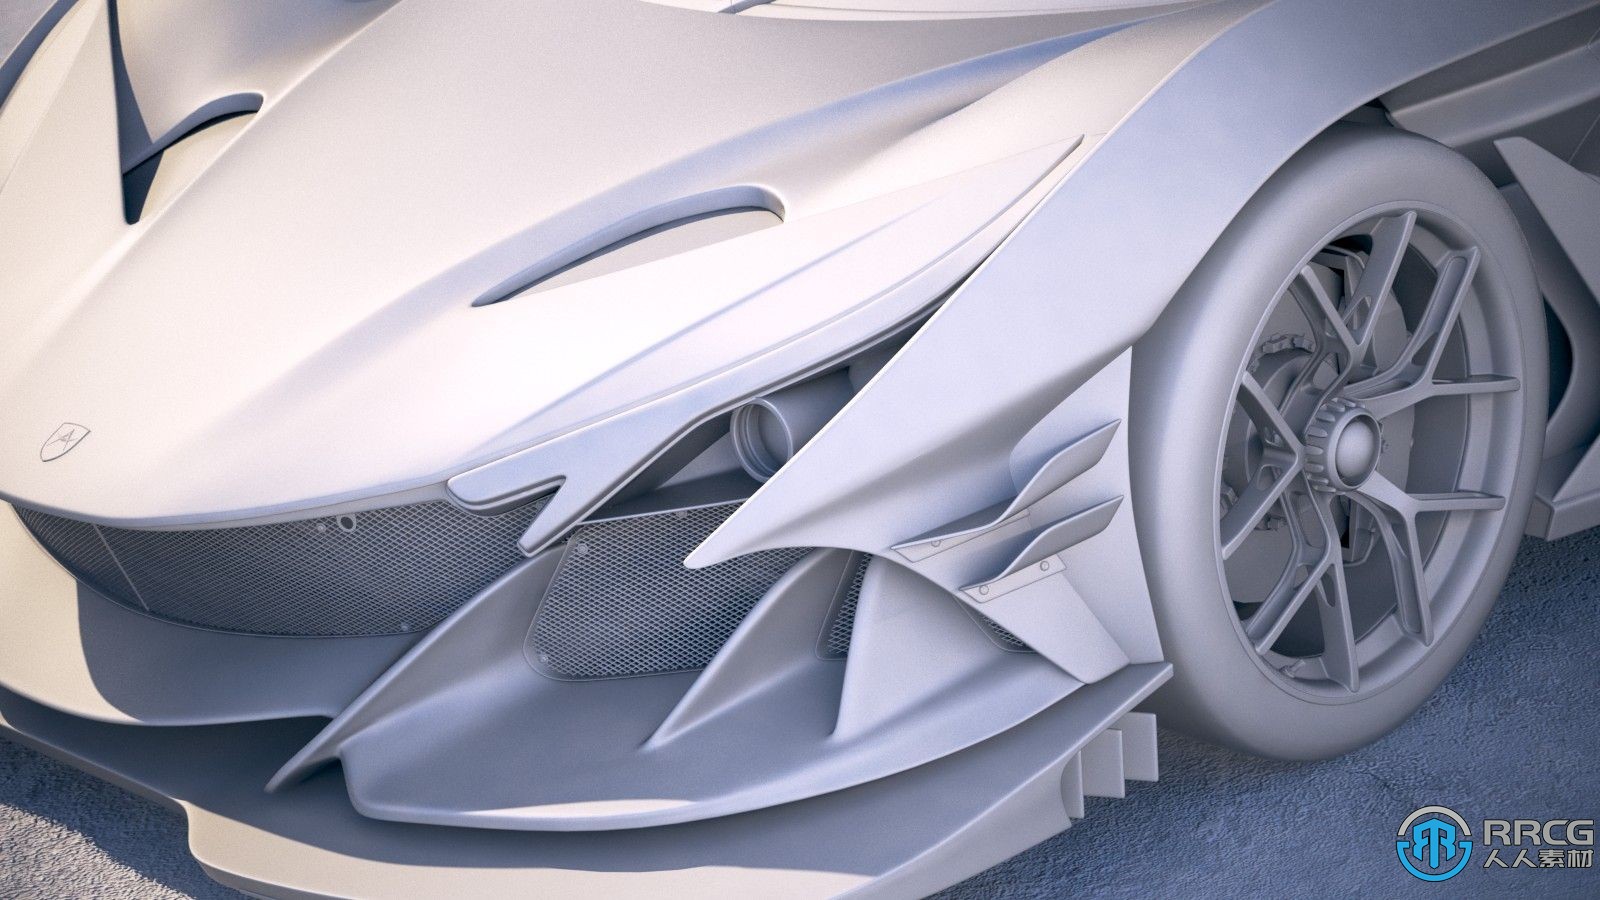 阿波罗Gumpert Apollo Intensa Emozione 2019款超跑汽车3D模型